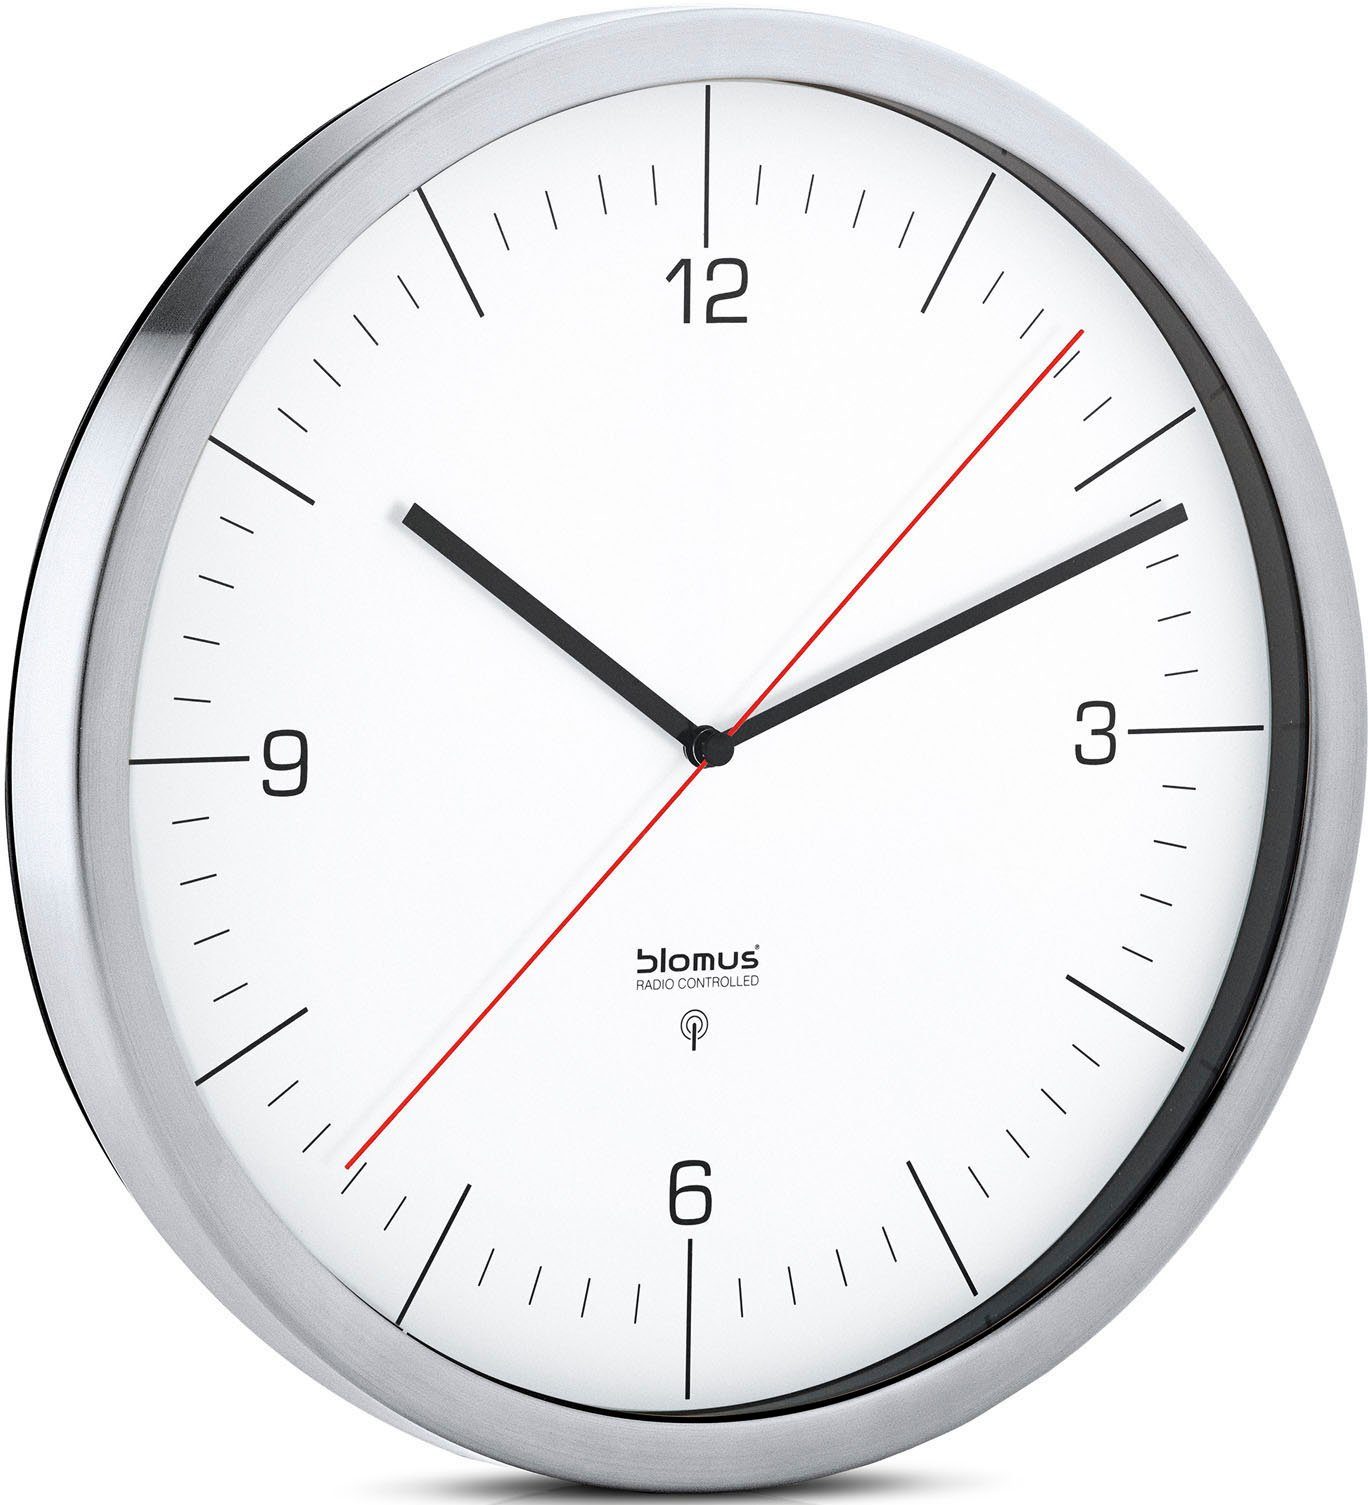 BLOMUS Zendergestuurde wandklok Radiografisch horloge wit de online | OTTO